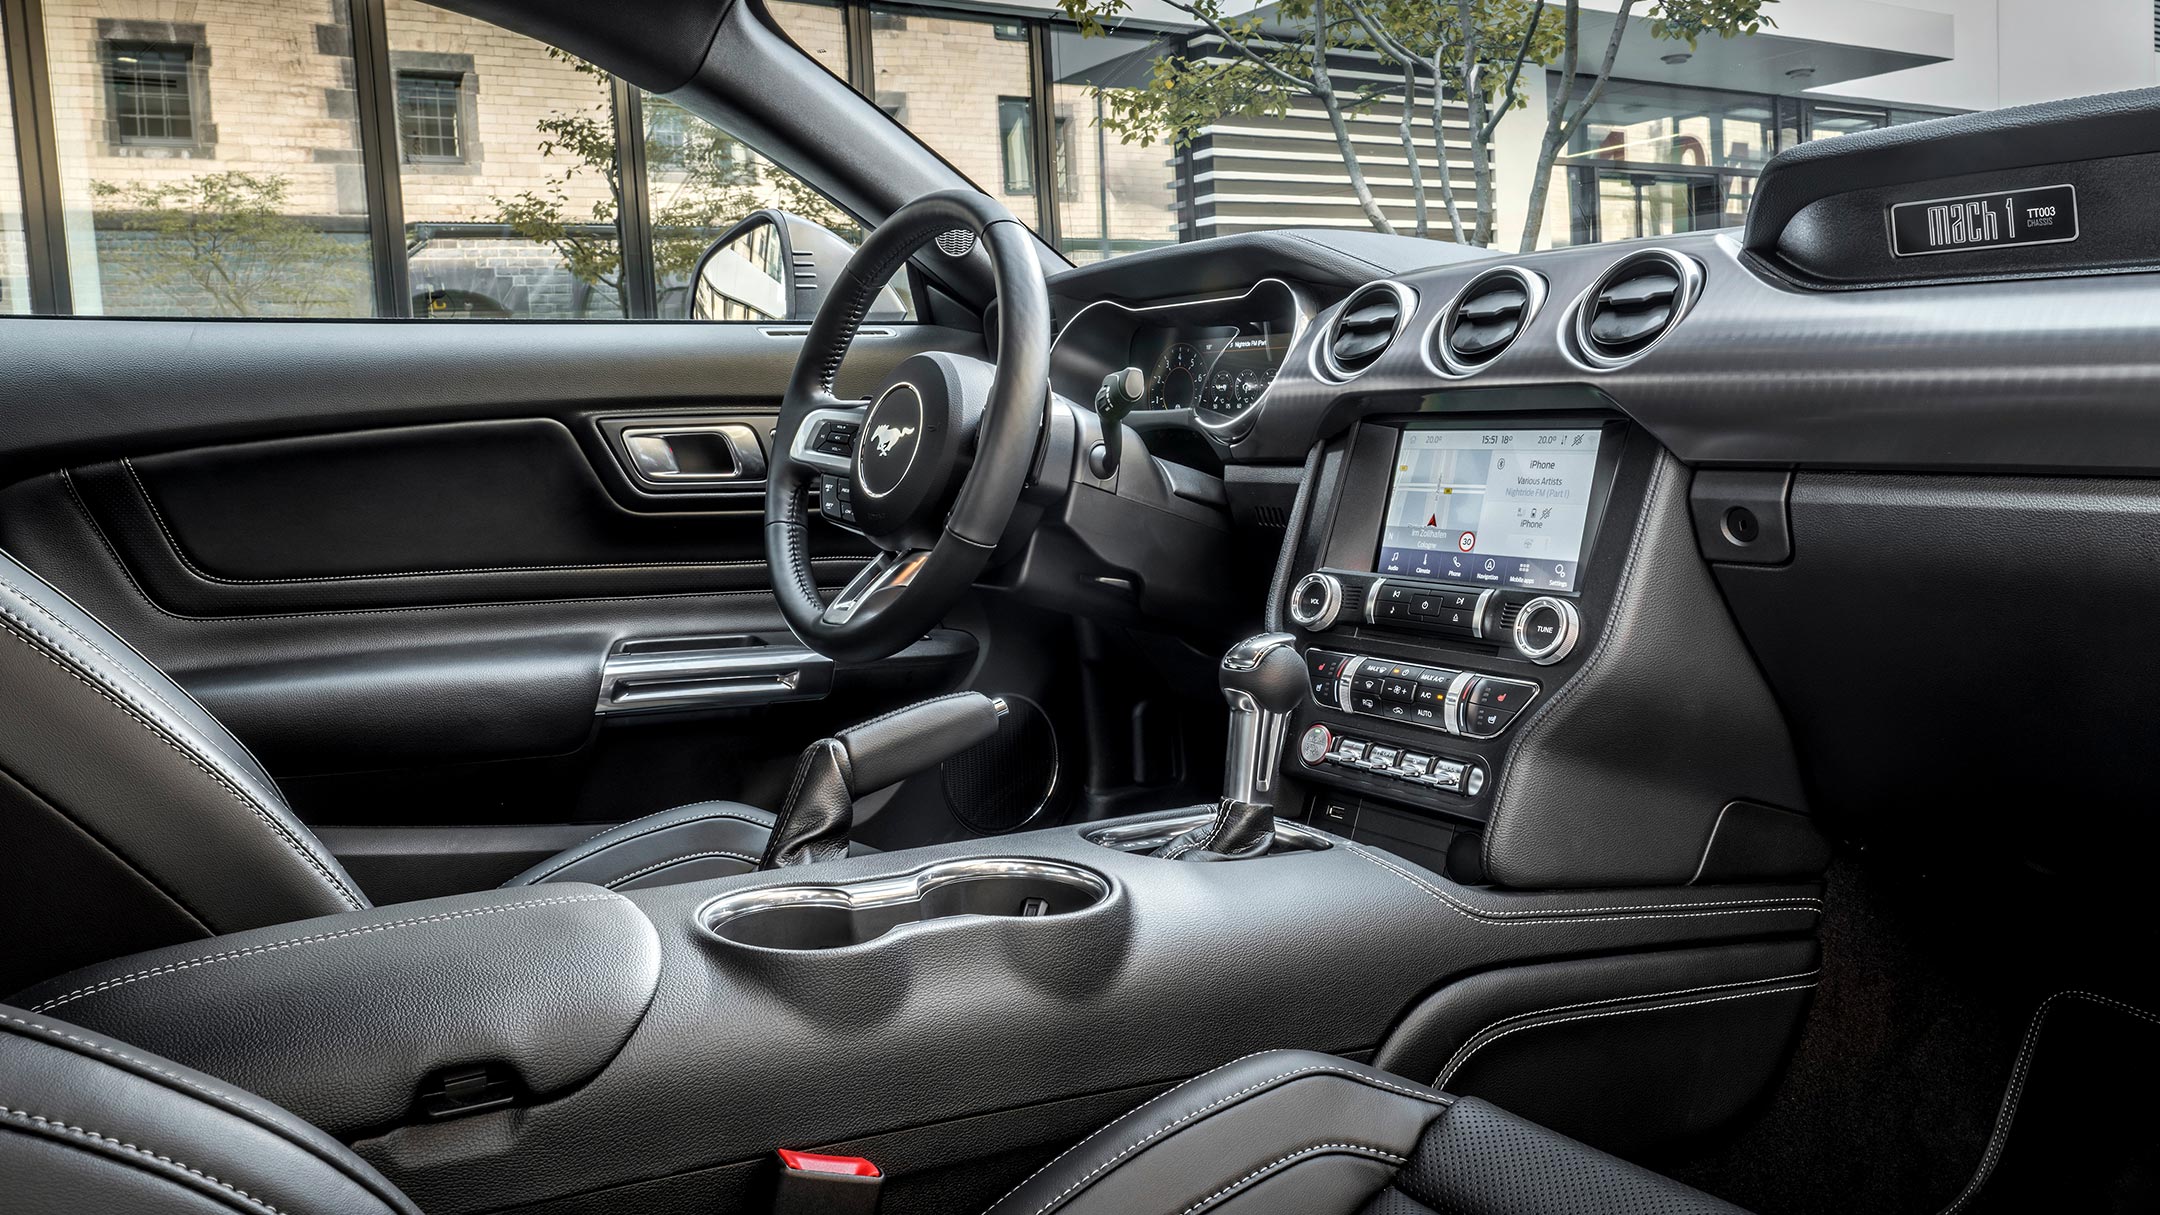 Ford Mustang GT. Innenraumansicht des Cockpits